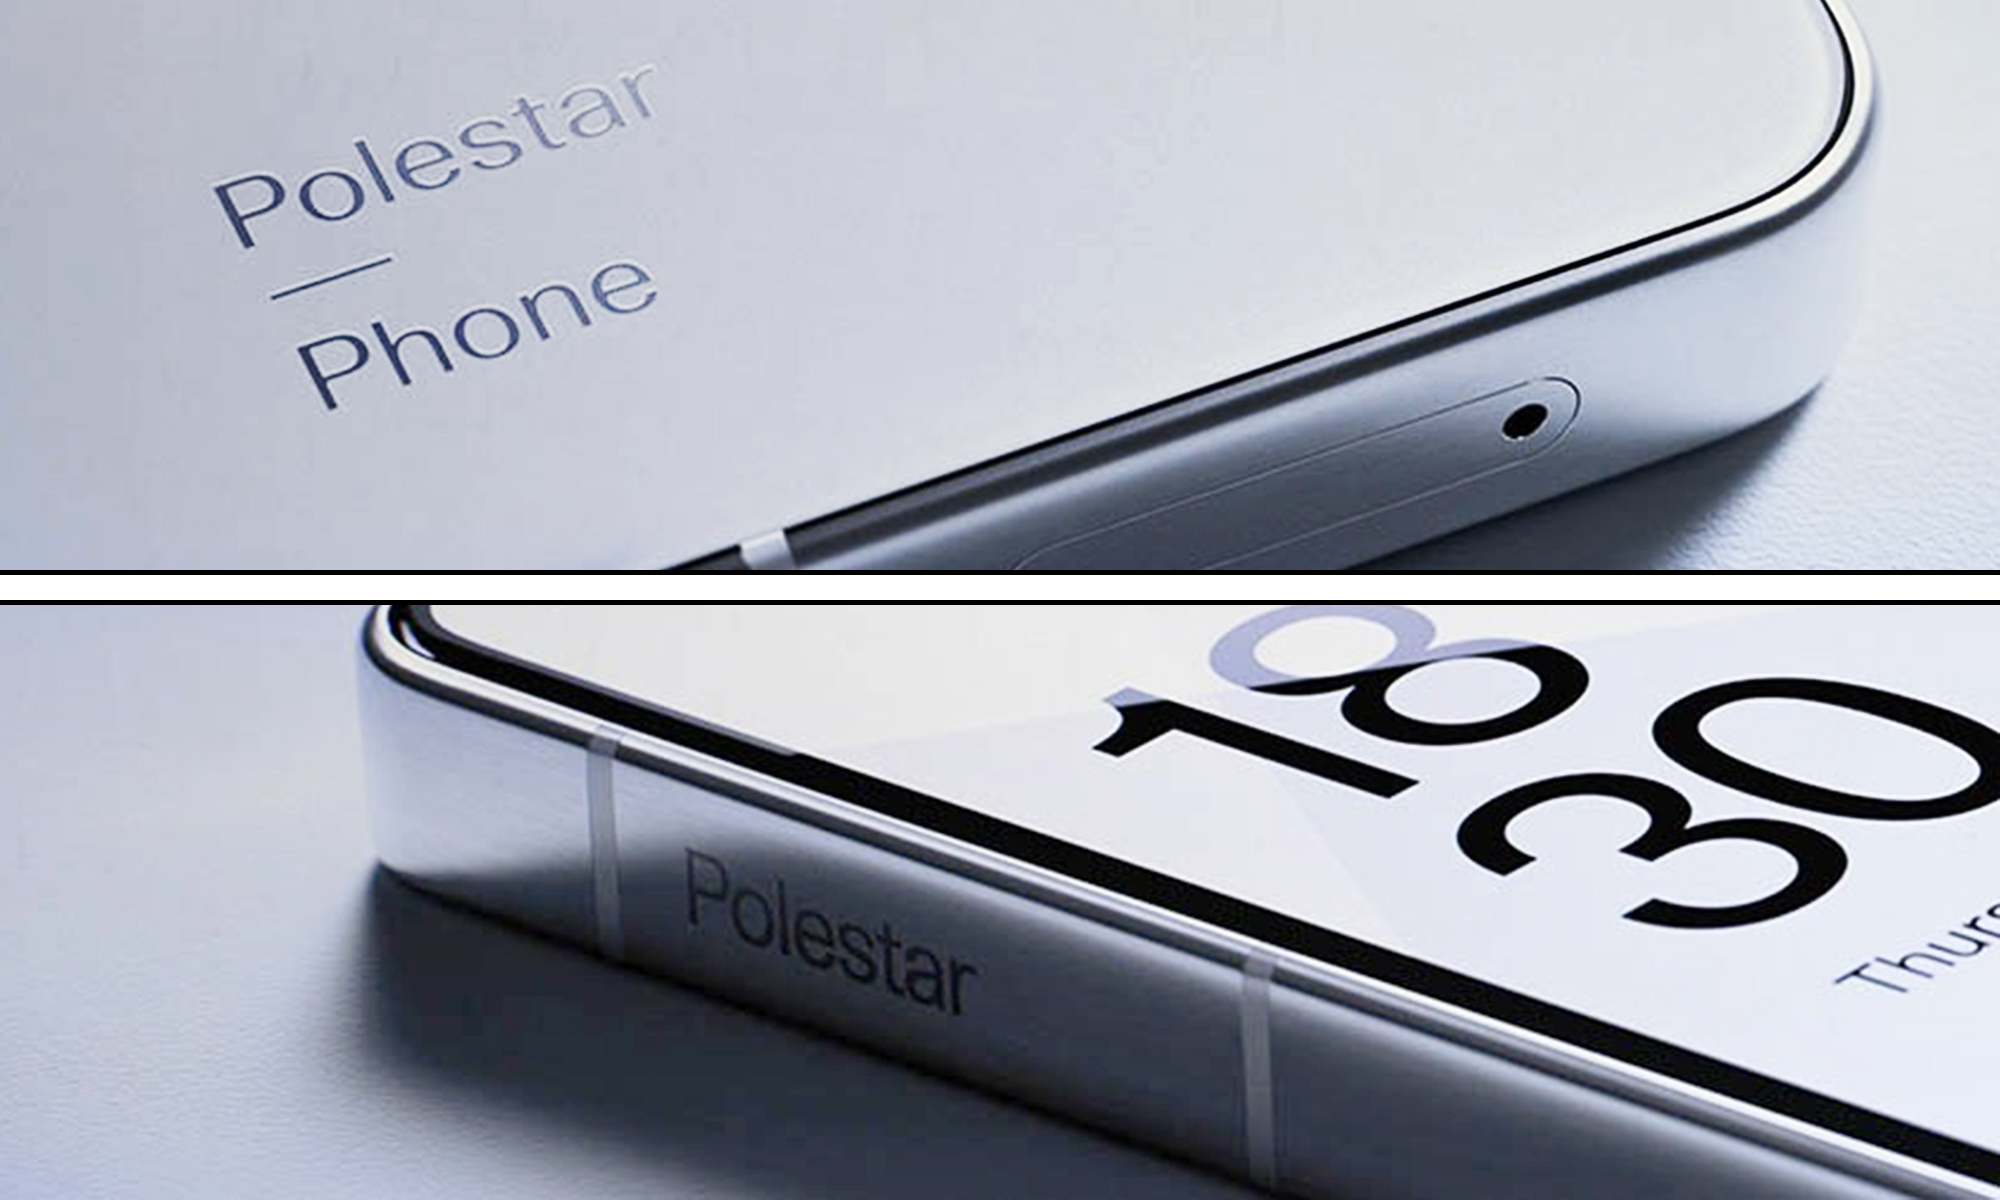 El Polestar Phone será el próximo paso para Polestar fuera de la movilidad eléctrica.